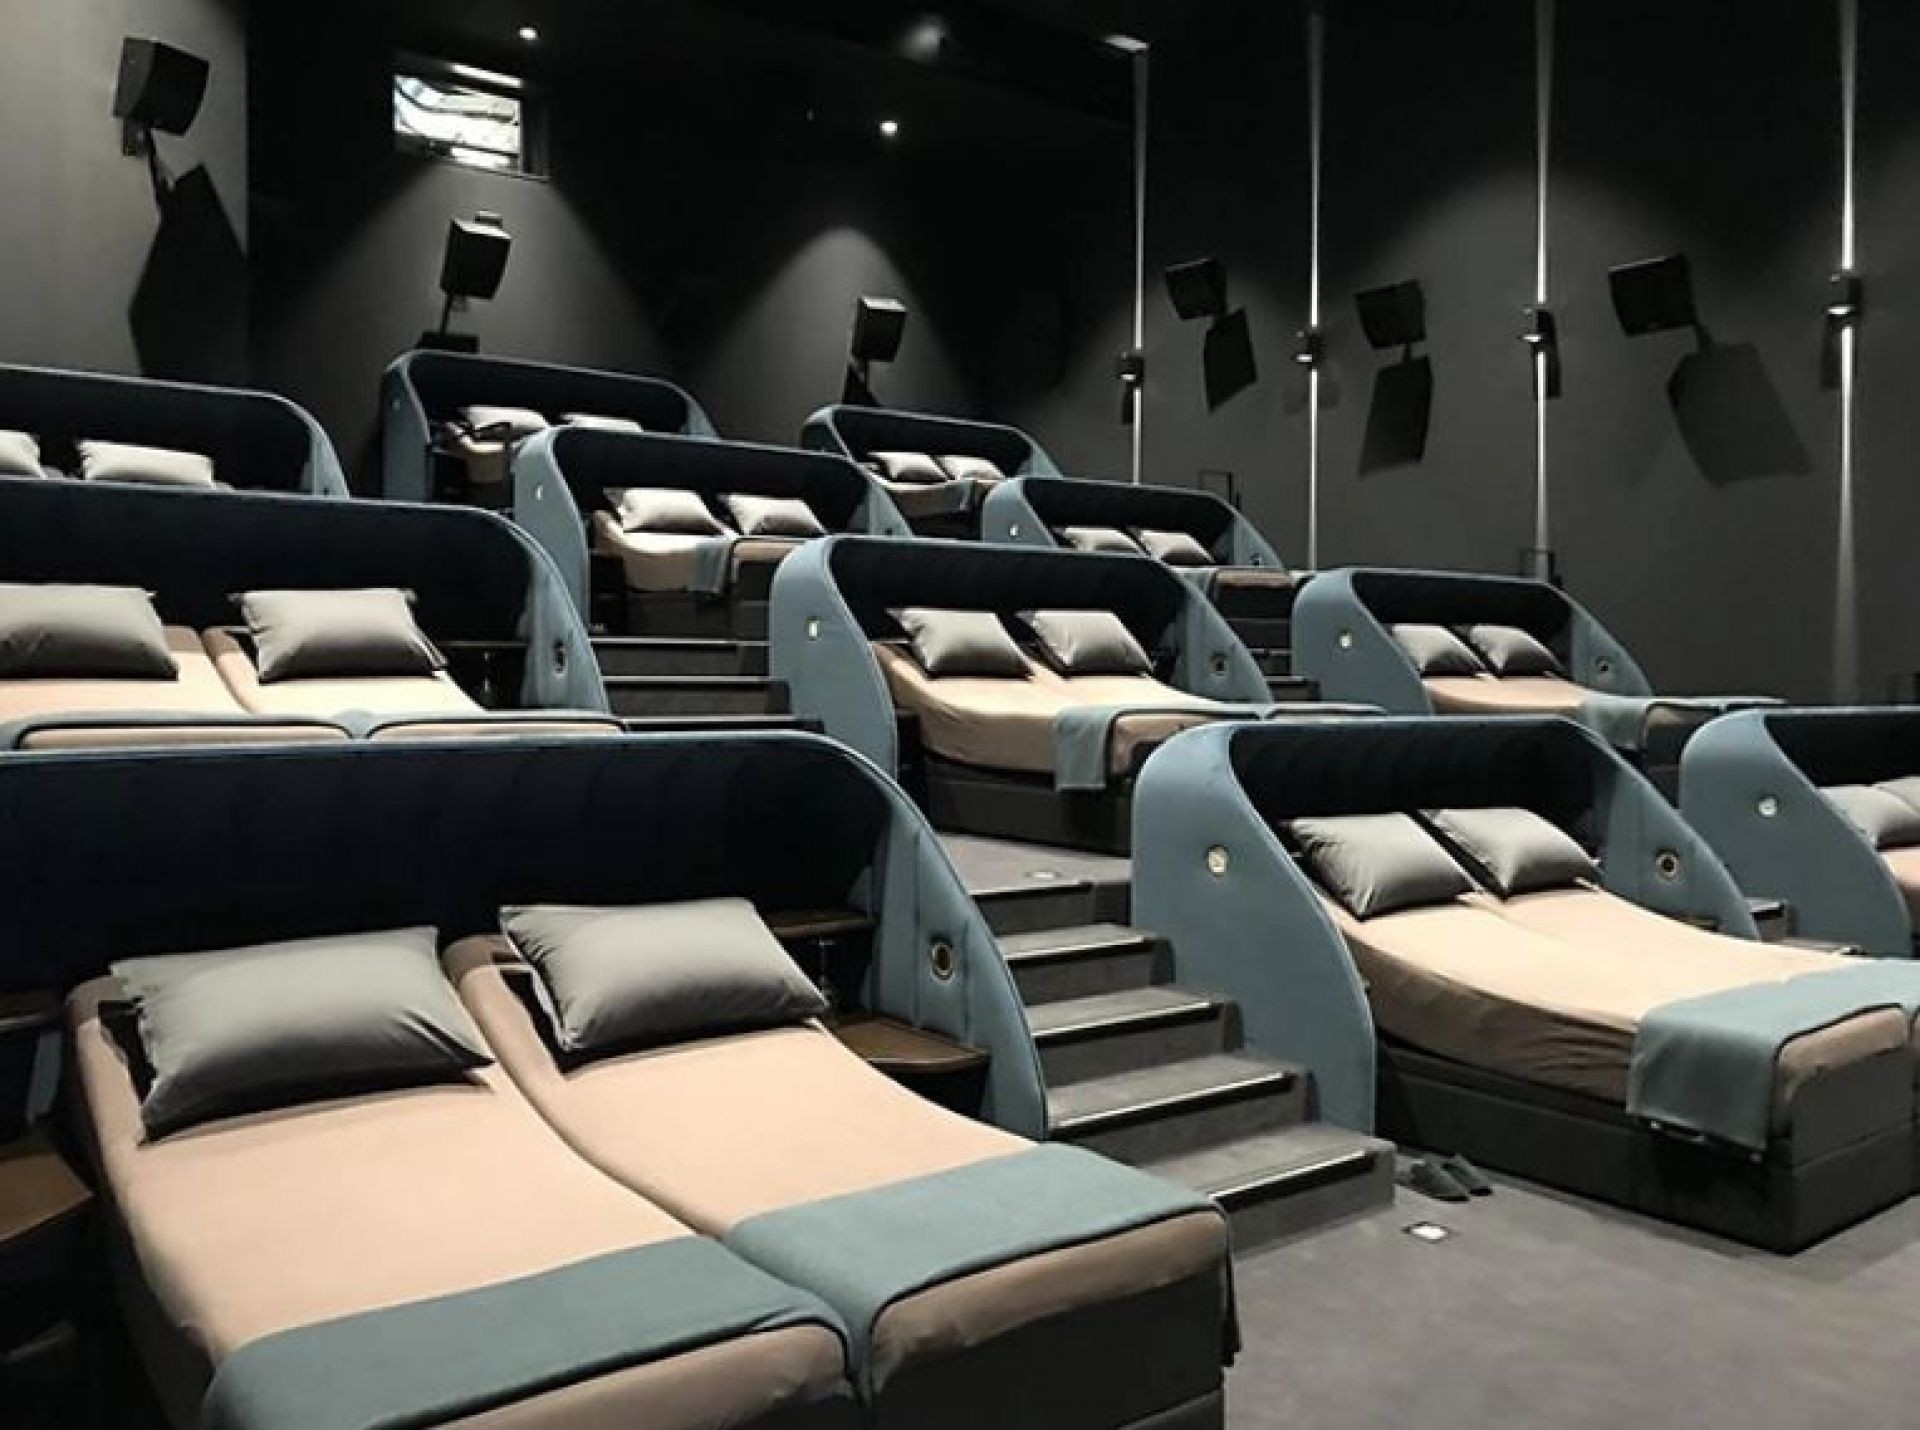 To szwajcarskie kino zastąpiło wszystkie fotele podwójnymi łóżkami!